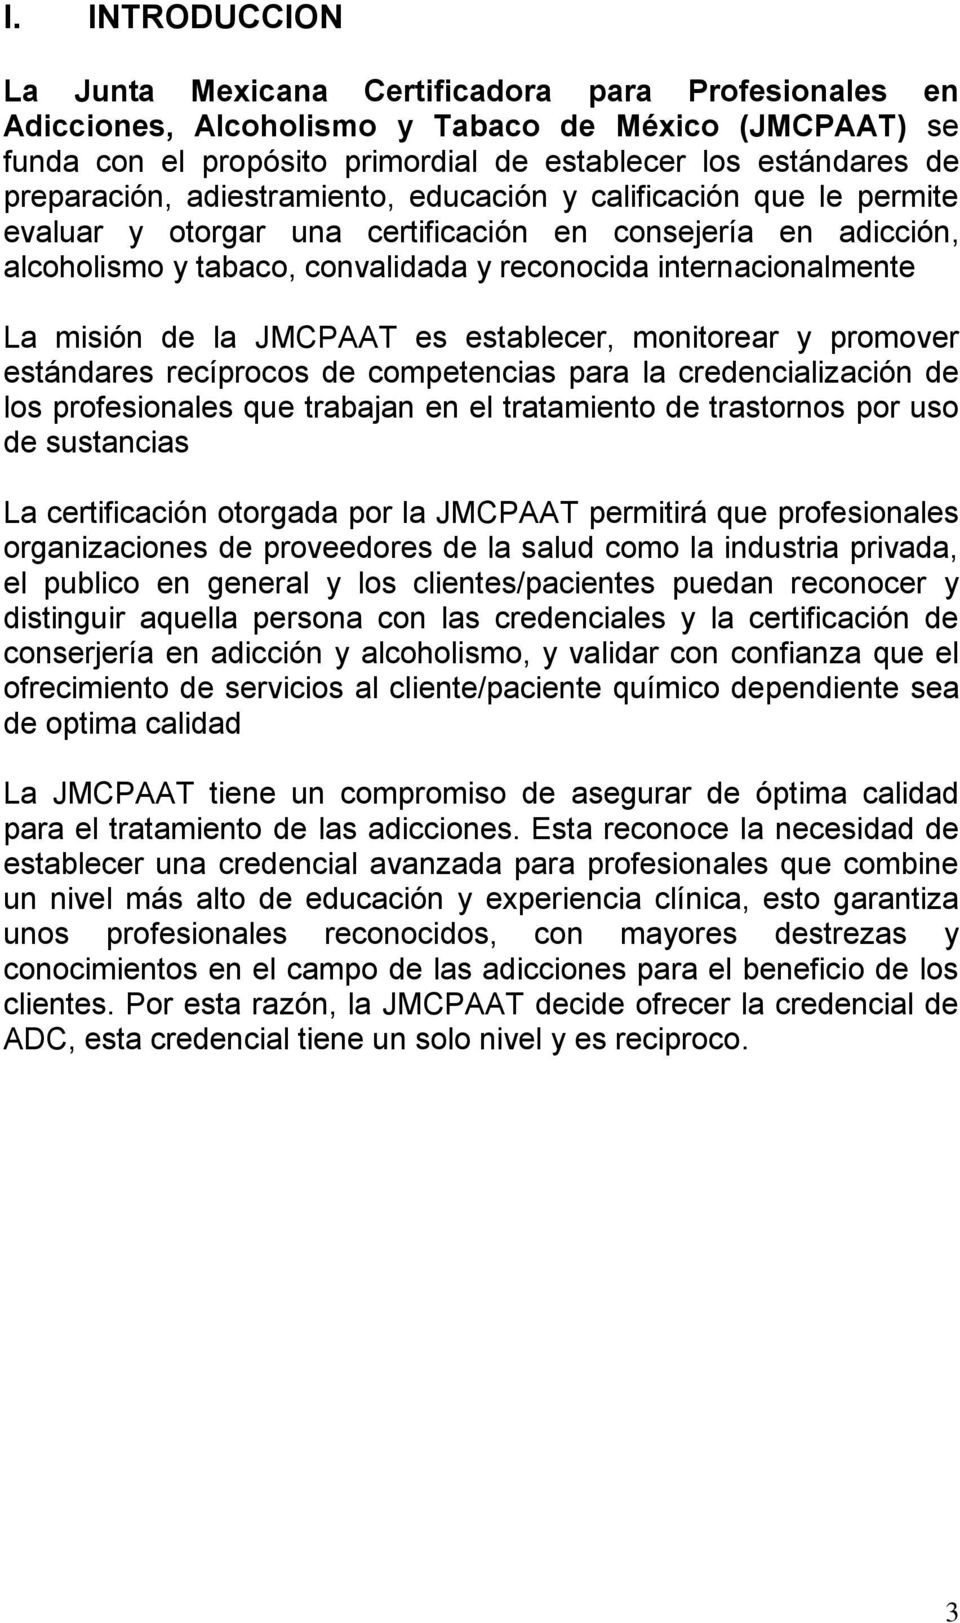 La misión de la JMCPAAT es establecer, monitorear y promover estándares recíprocos de competencias para la credencialización de los profesionales que trabajan en el tratamiento de trastornos por uso